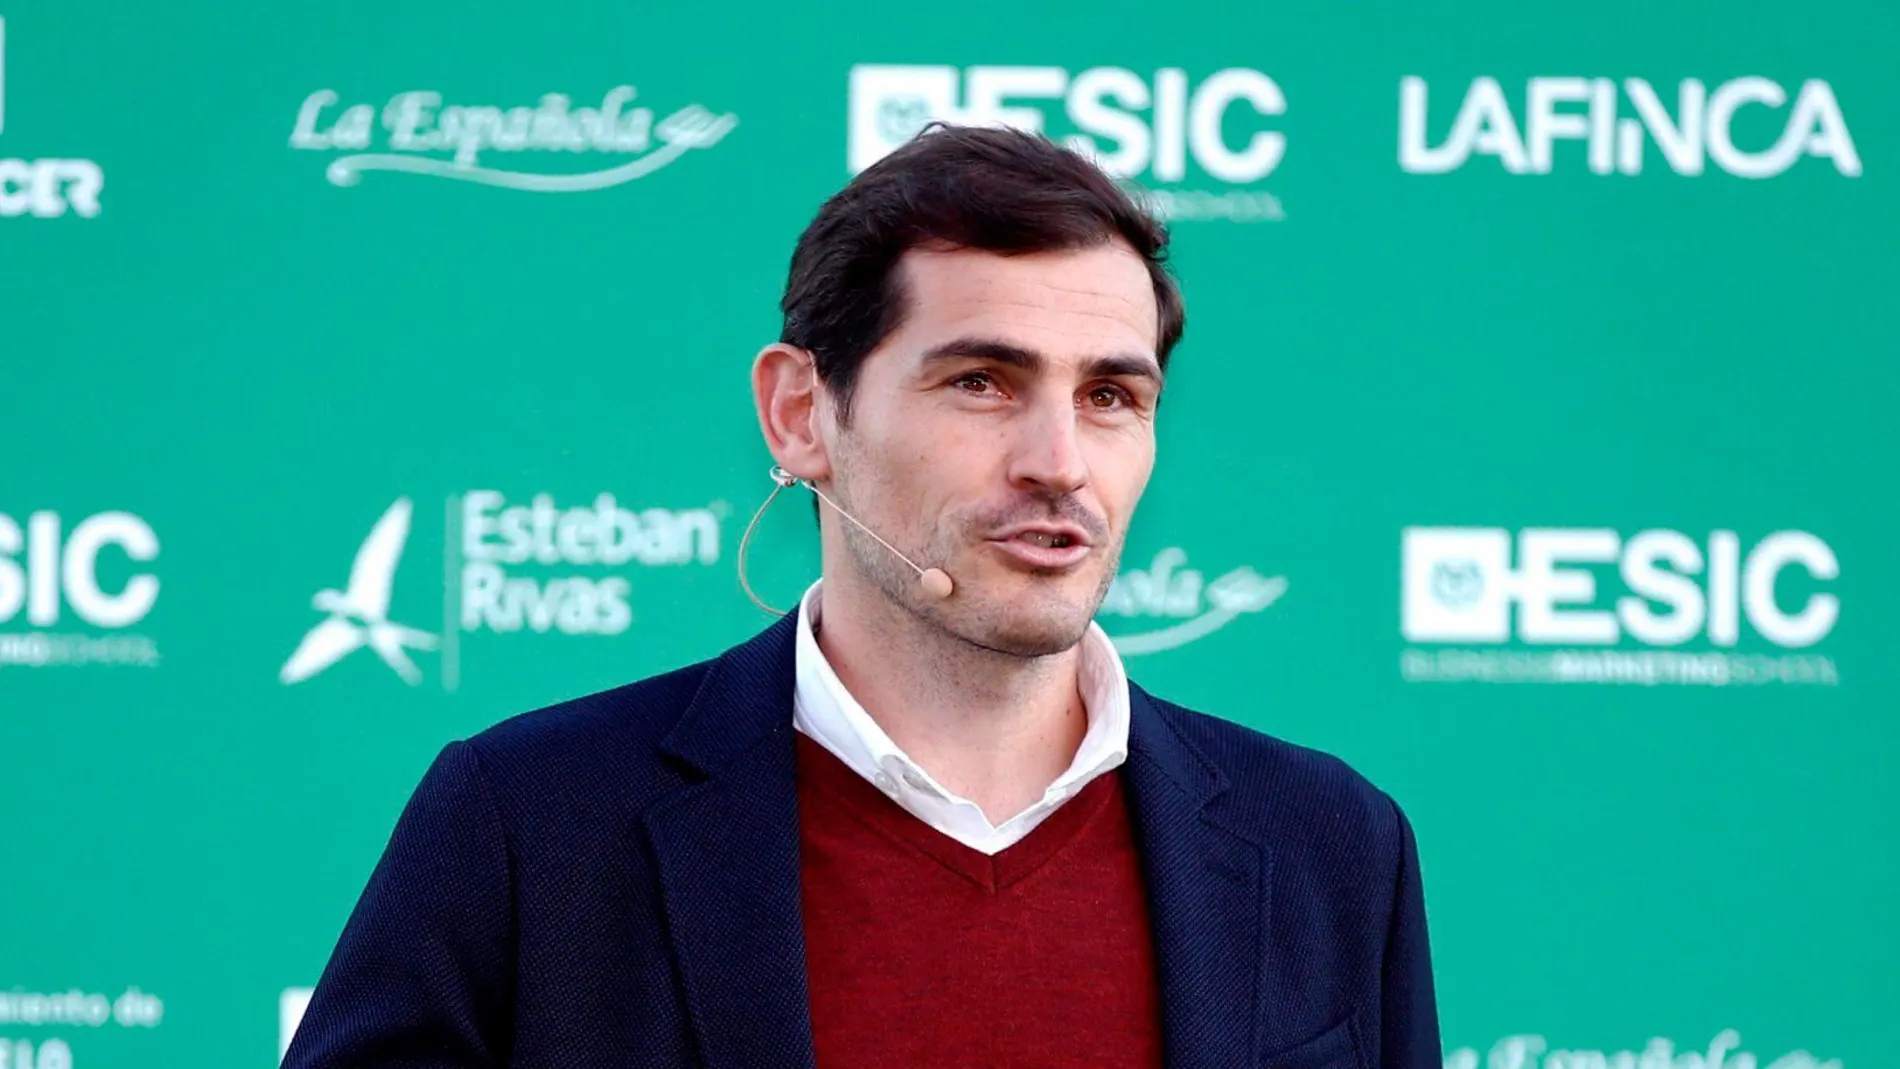 “Eres raro de cojones”, la reacción de Cesc a la manía de Iker Casillas revelada en Twitter